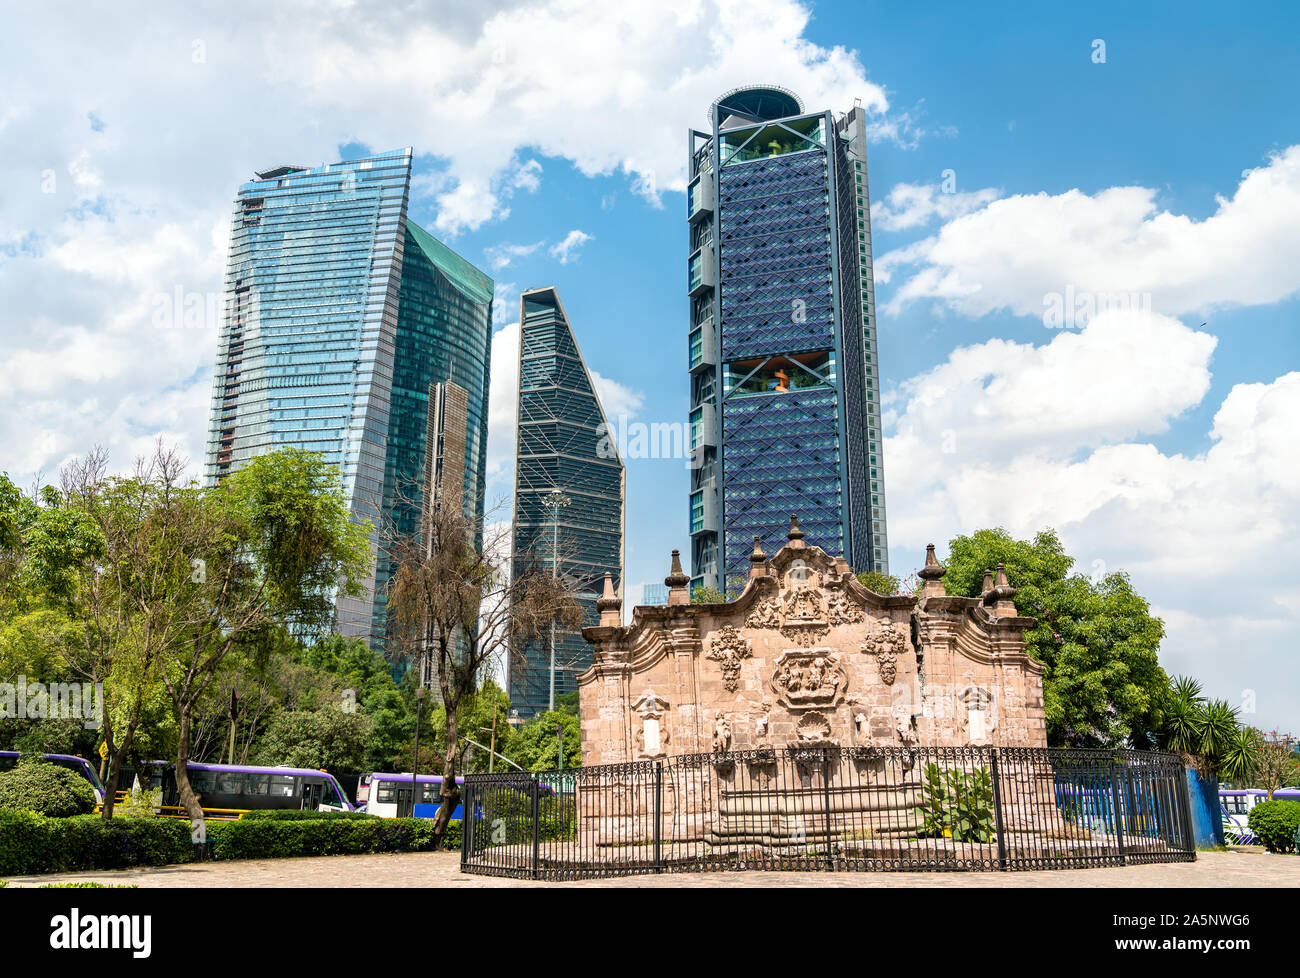 Belen Fountain in Mexico City Stock Photo